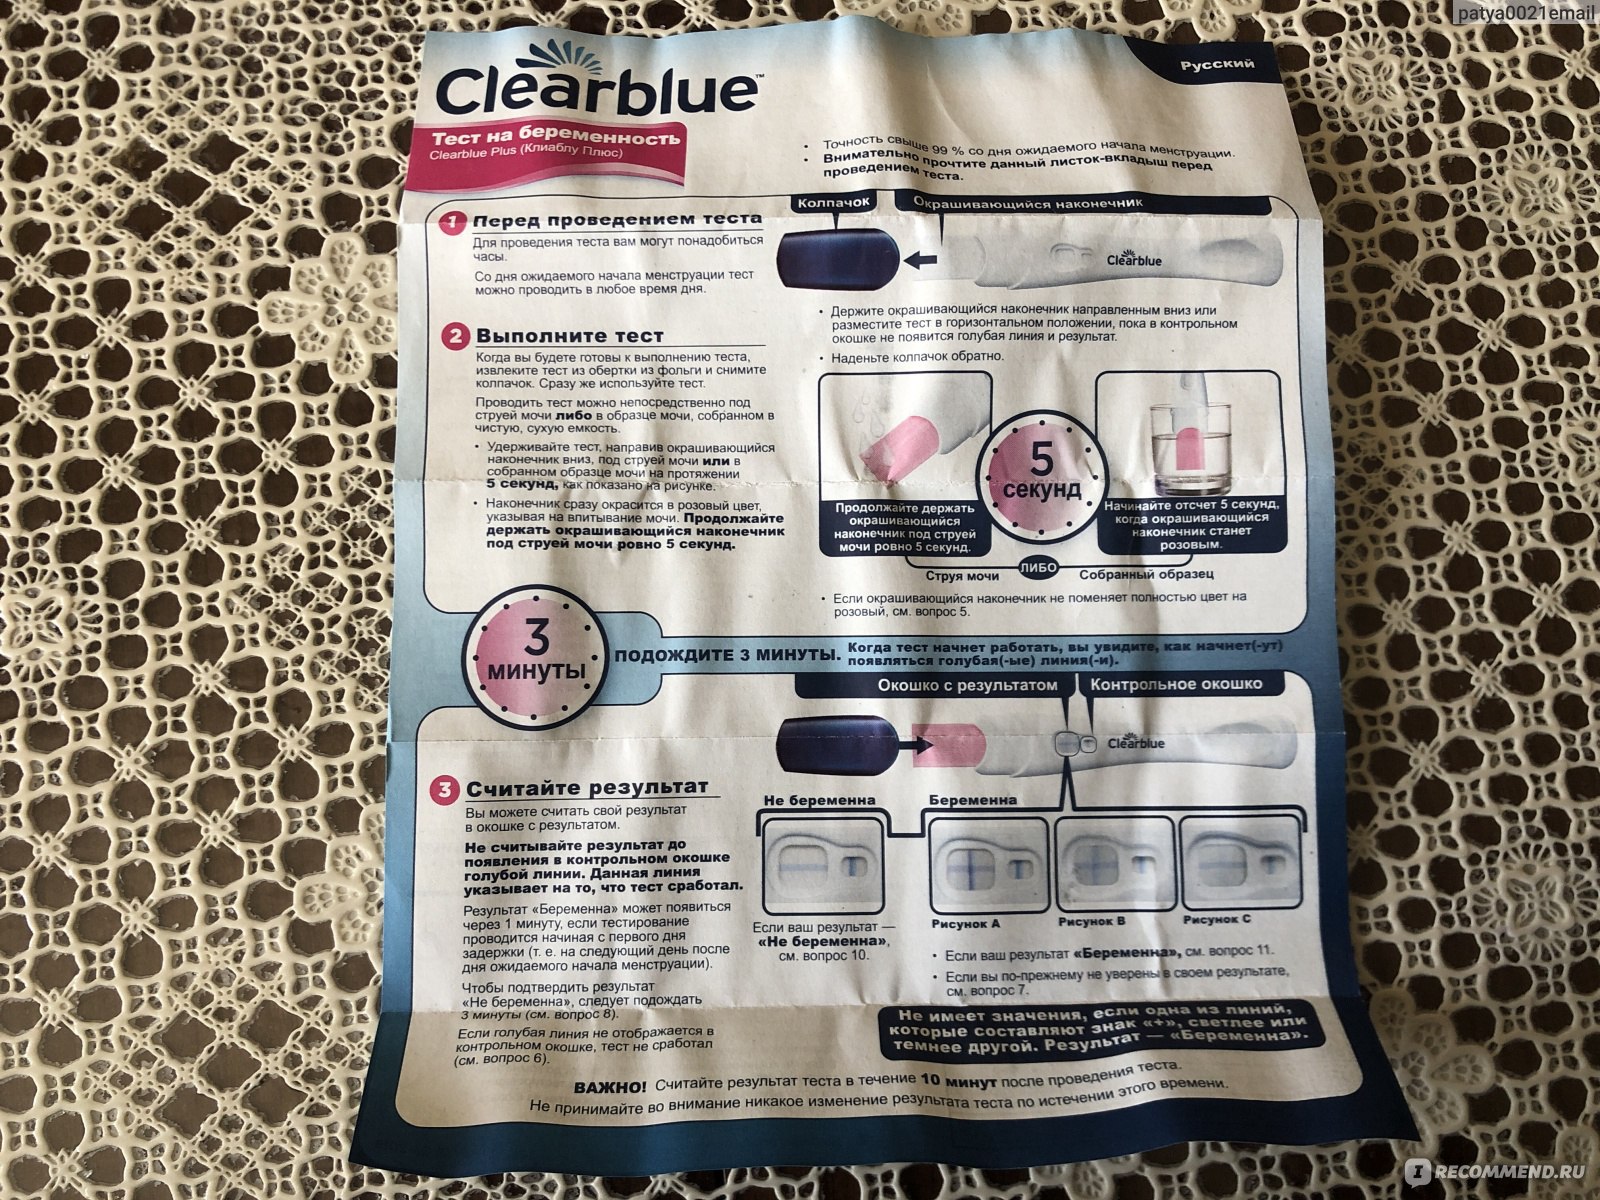 Тесты на беременность Clearblue PLUS фото